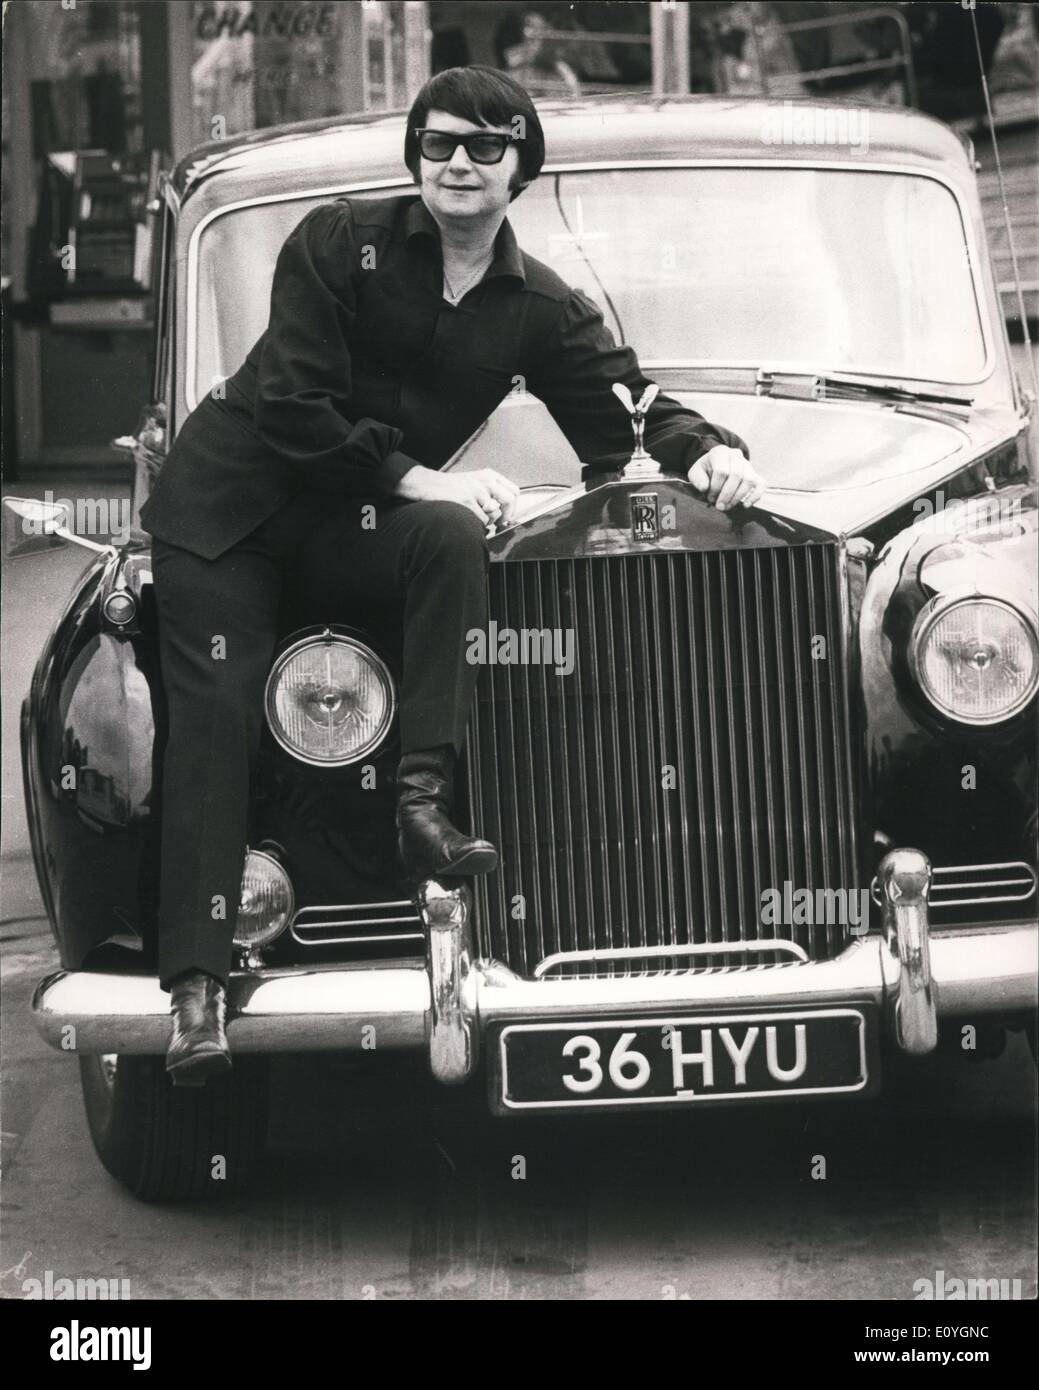 5. Mai 1970 - Proben für verschiedene Club Star Gala Tag Roy Orbison kommt im Rolls-Royce: Proben wurden heute stattfindet am London Festival Lustgärten, Battersea Park, für den Variety Club Star Gala Day, am Samstag, M Ay 3o stattfindet. Das Foto zeigt. Amerikanischen Gesangsstar Roy Orbison mit seinen Rolls-Royce abgebildet, als er für die Proben an das Festival Gärten heute ankam. Stockfoto